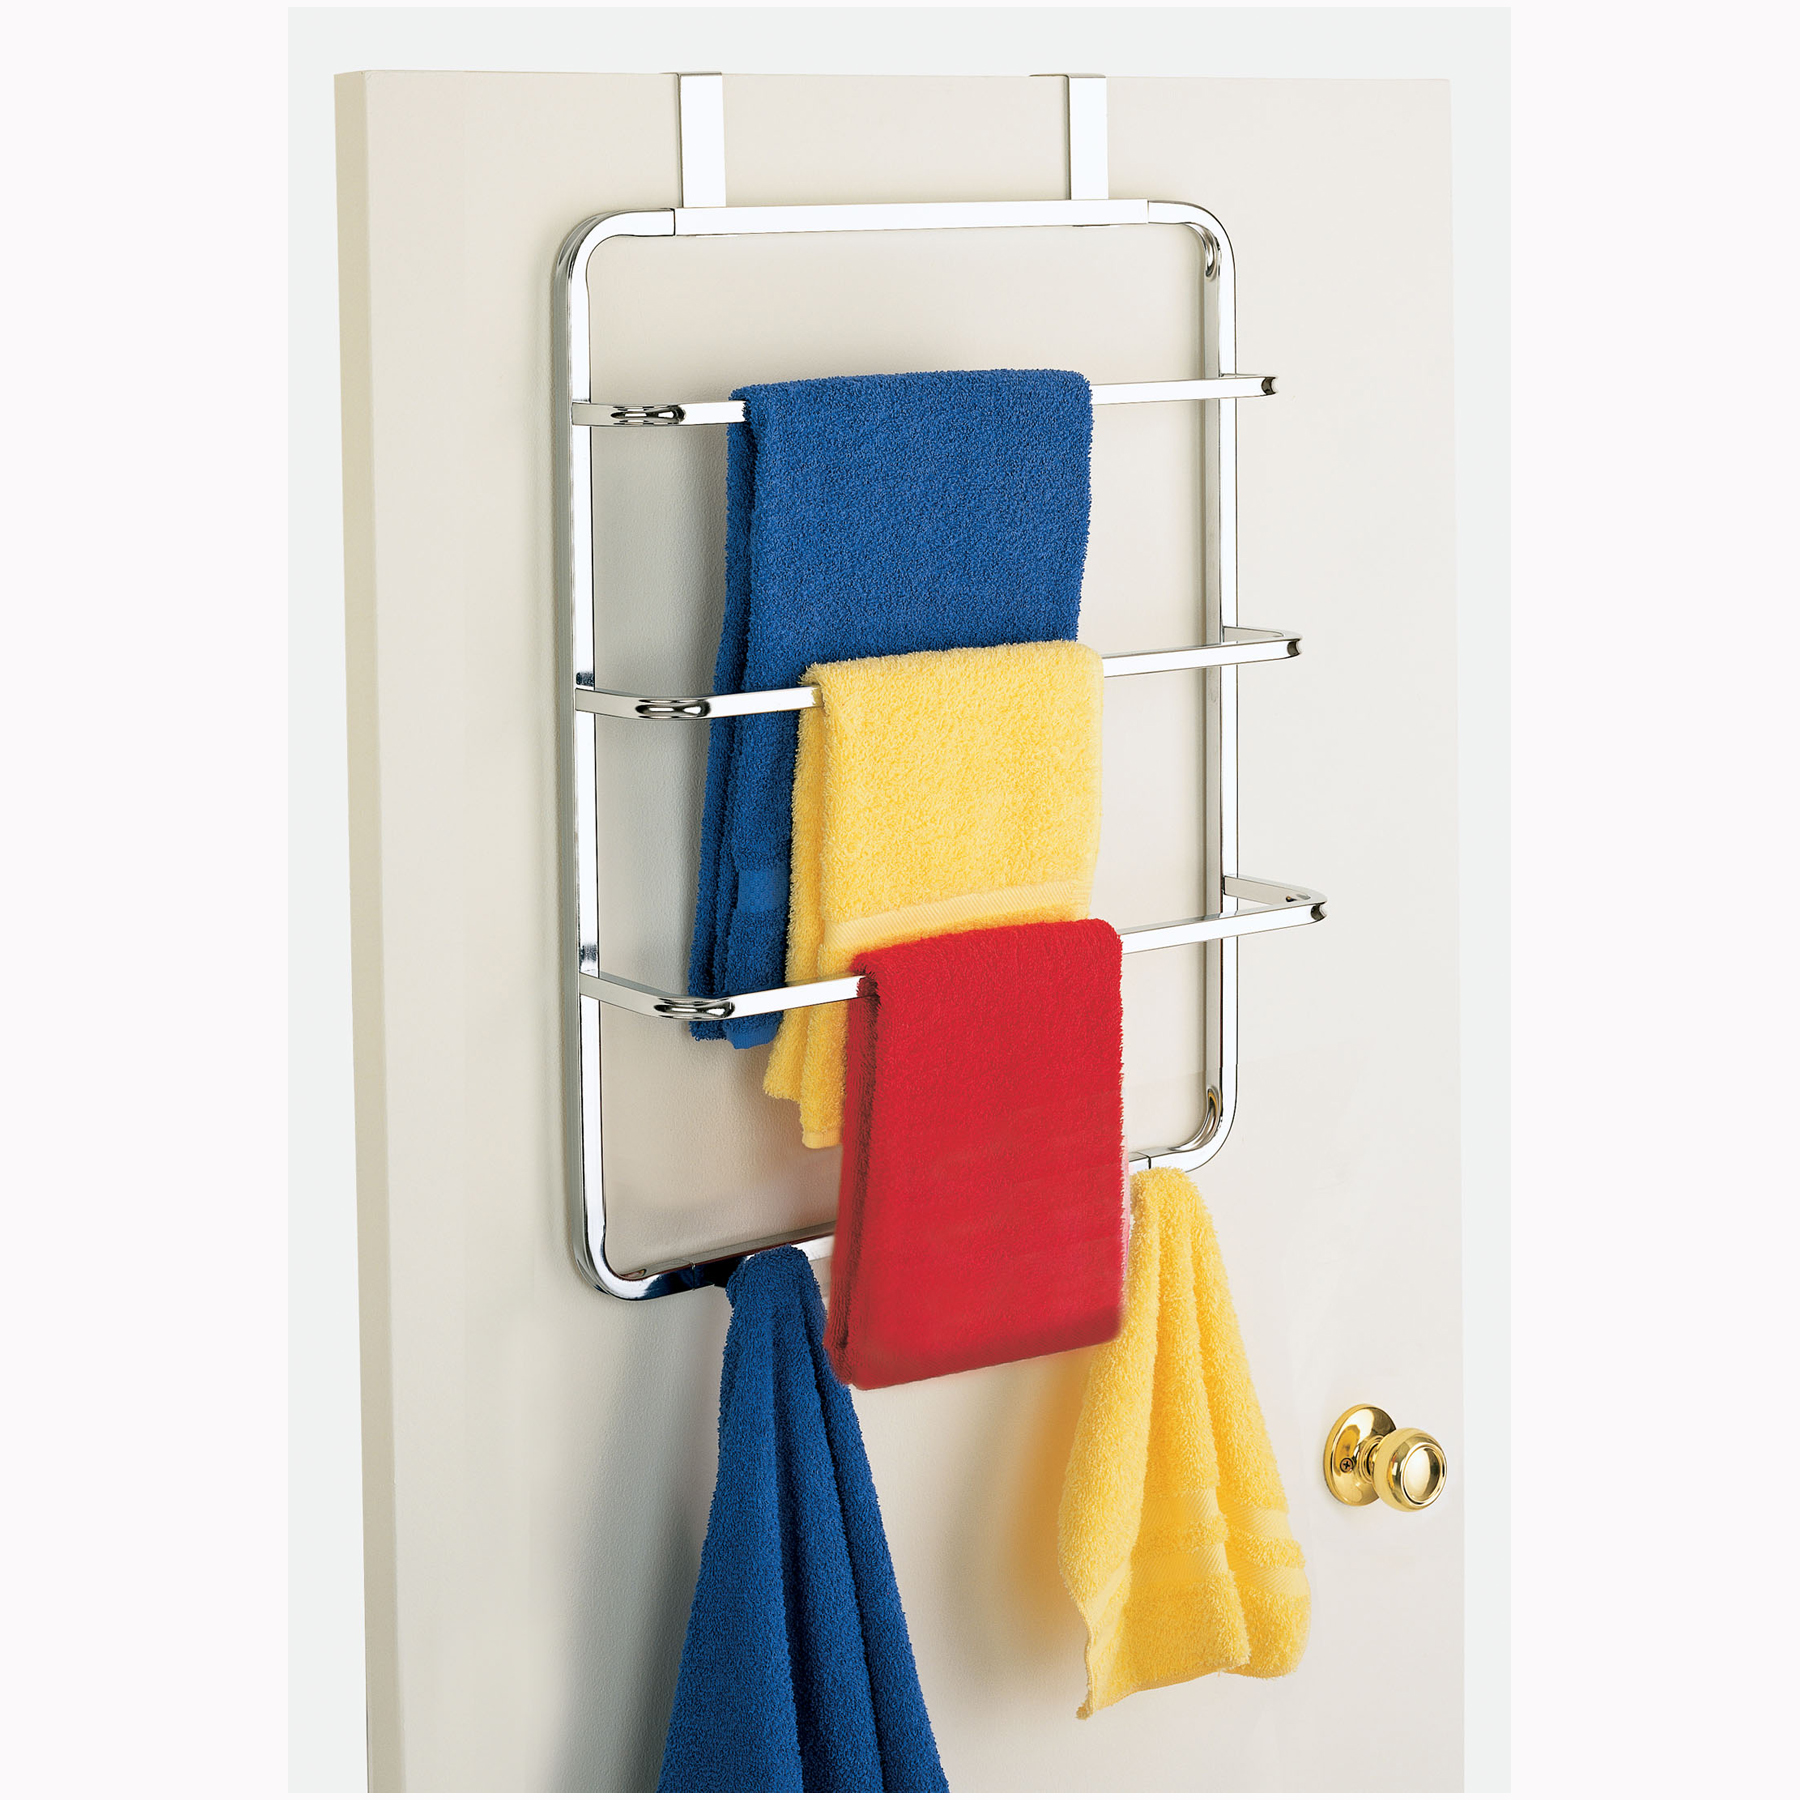 Essential Home Over the Door Towel Rack